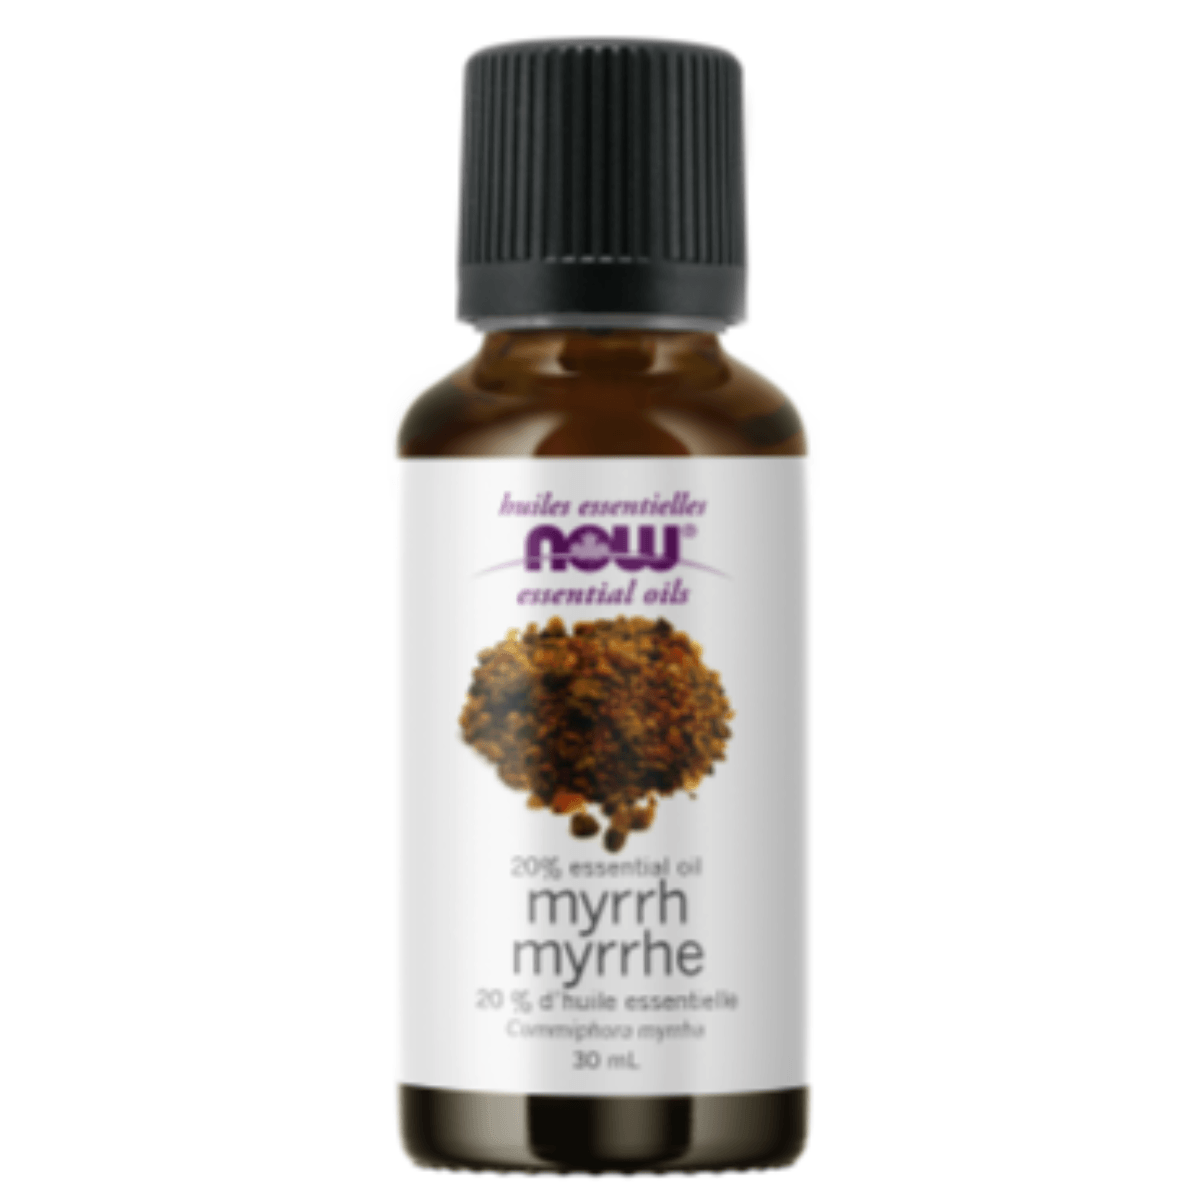 NOW Myrrh 20% Oil 30mL Essential Oils at Village Vitamin Store